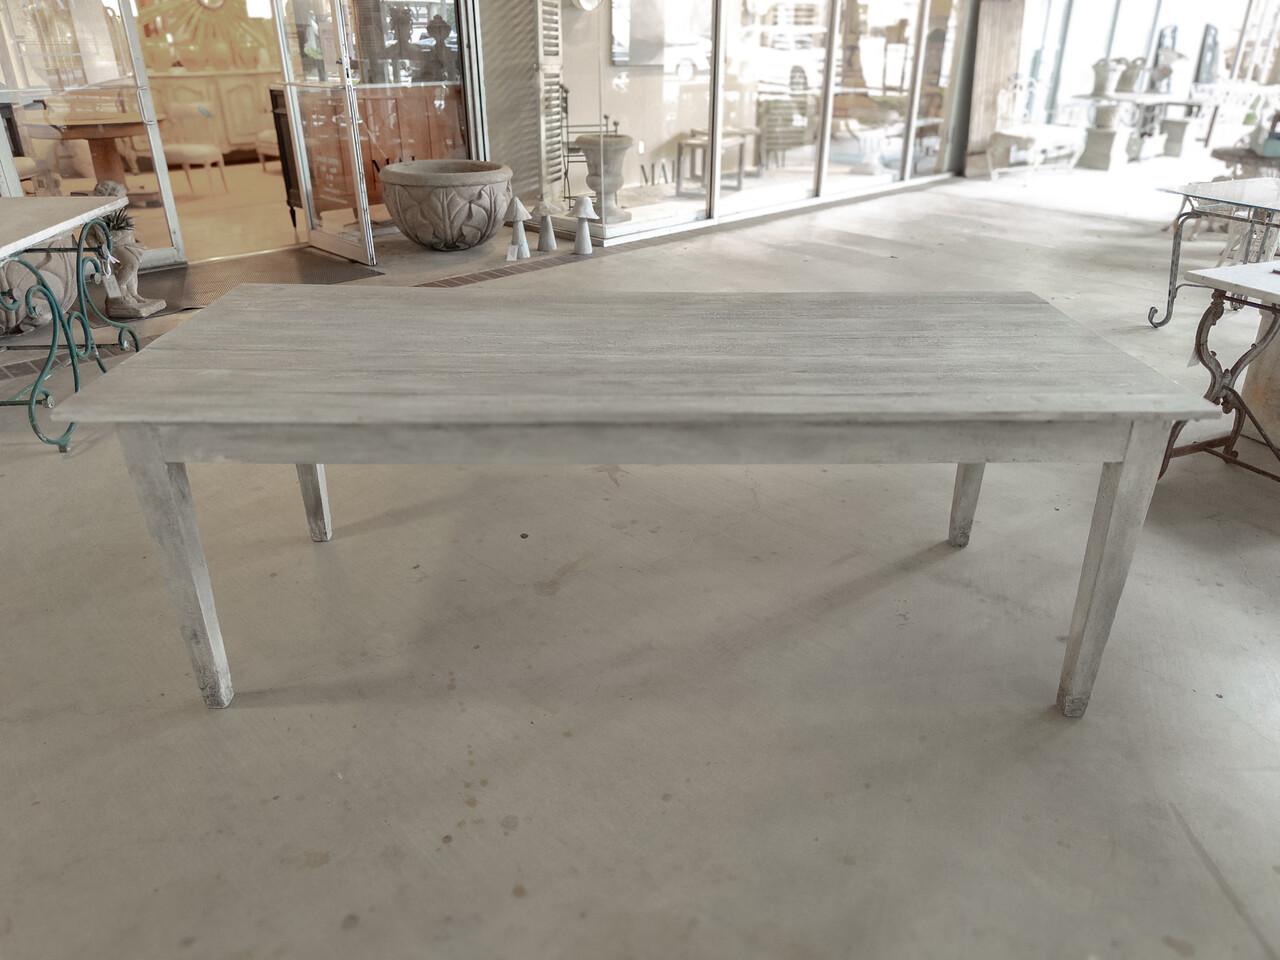 Der maßgefertigte Plank Top Farm Table ist ein rustikales Meisterwerk, das Funktionalität und handwerkliches Können miteinander verbindet. Sein Design strahlt einen warmen, einladenden Charme aus, der an die Einfachheit und den Komfort des